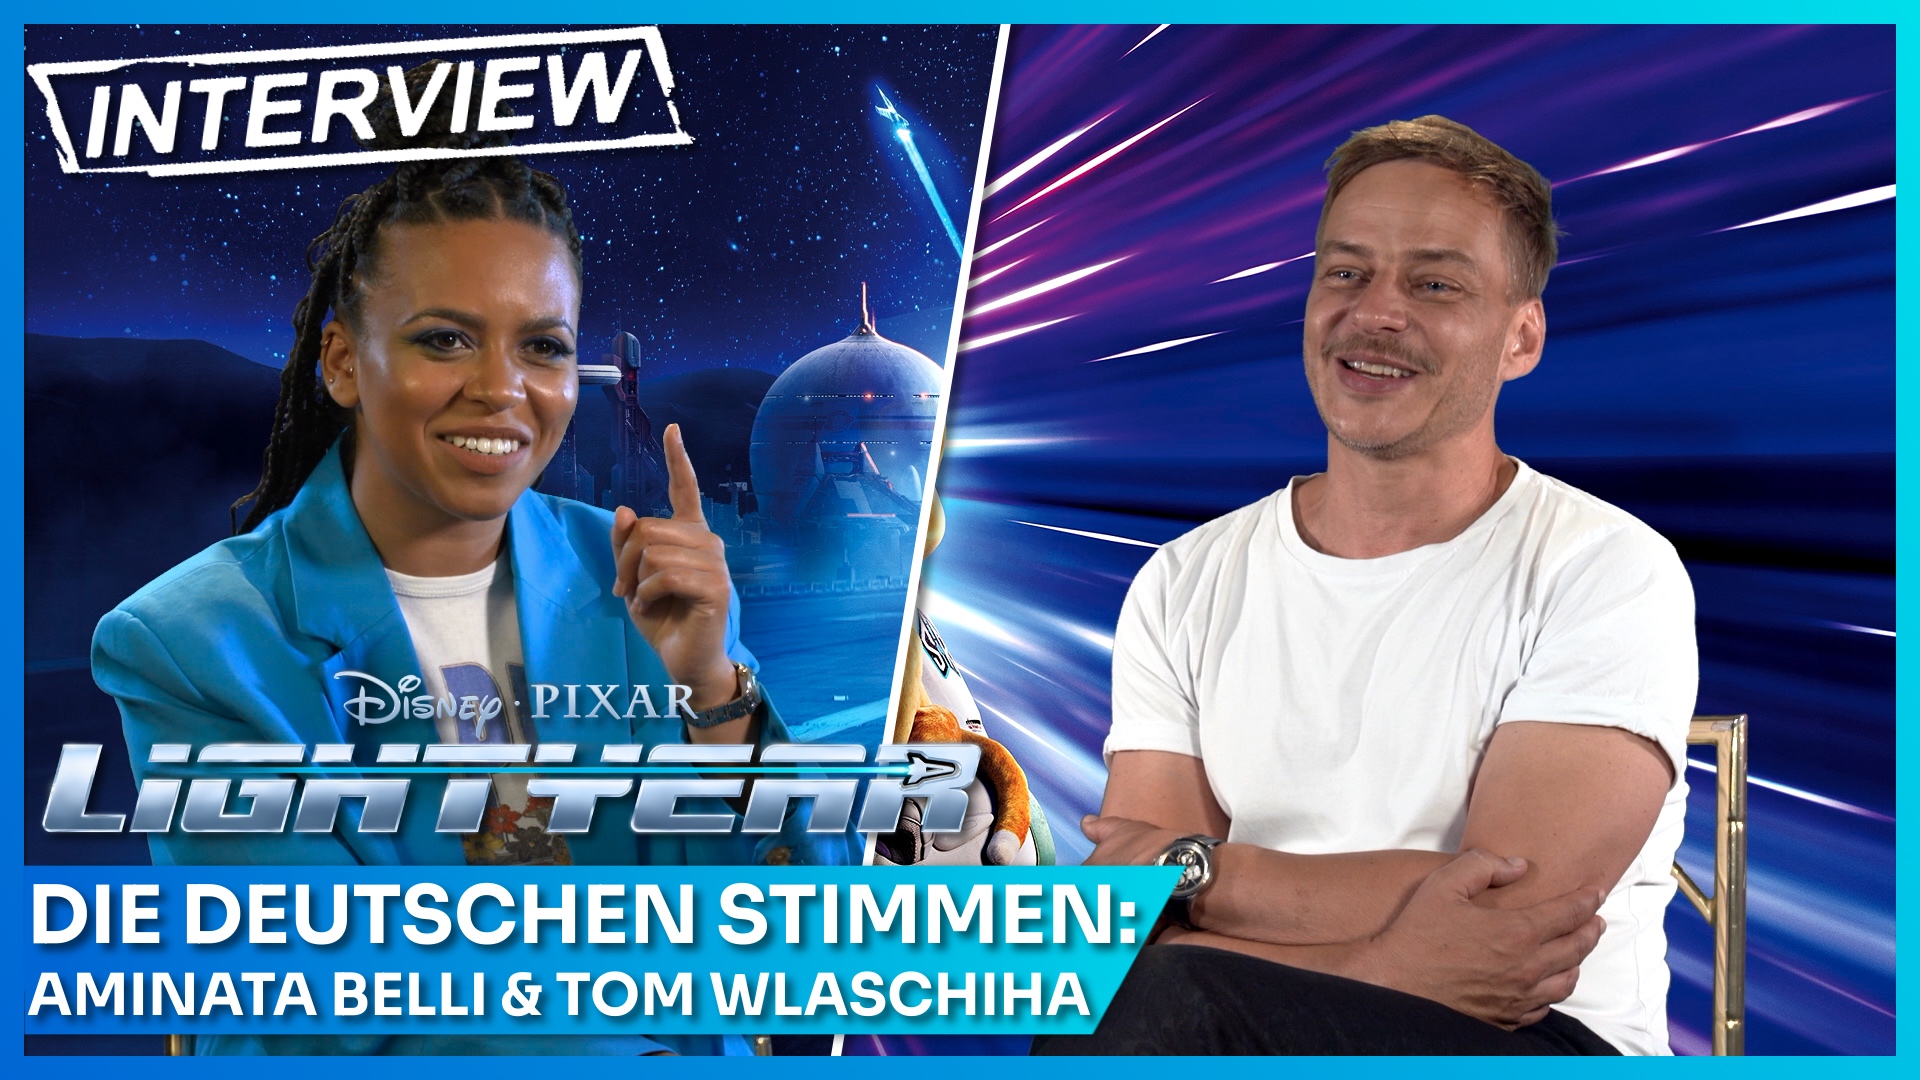 Lightyear-Synchronsprecher Tom Wlaschiha und Aminata Belli im Interview